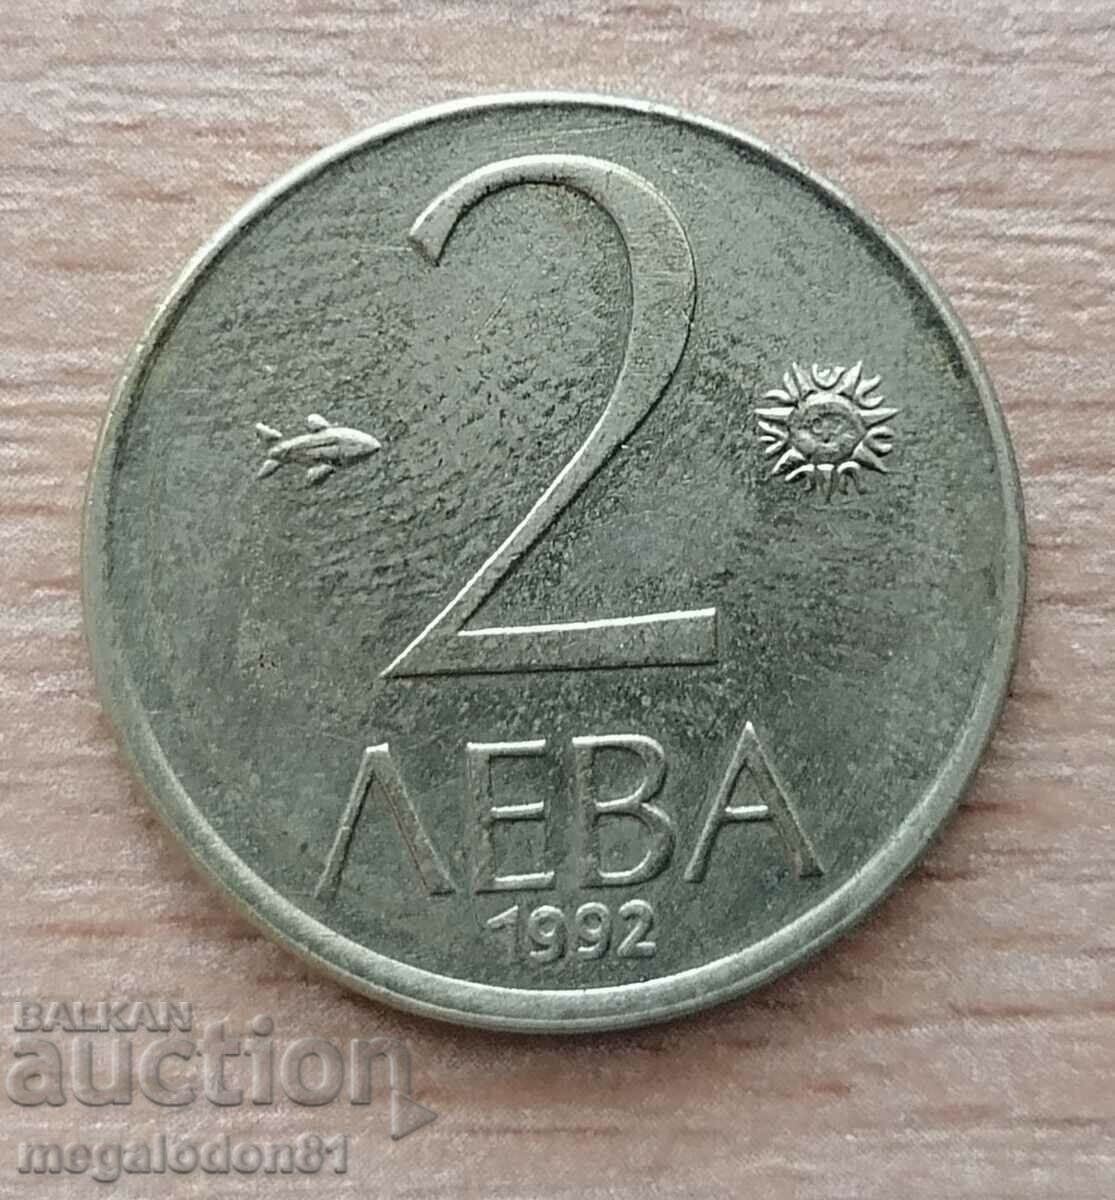 Βουλγαρία - 2 BGN 1992